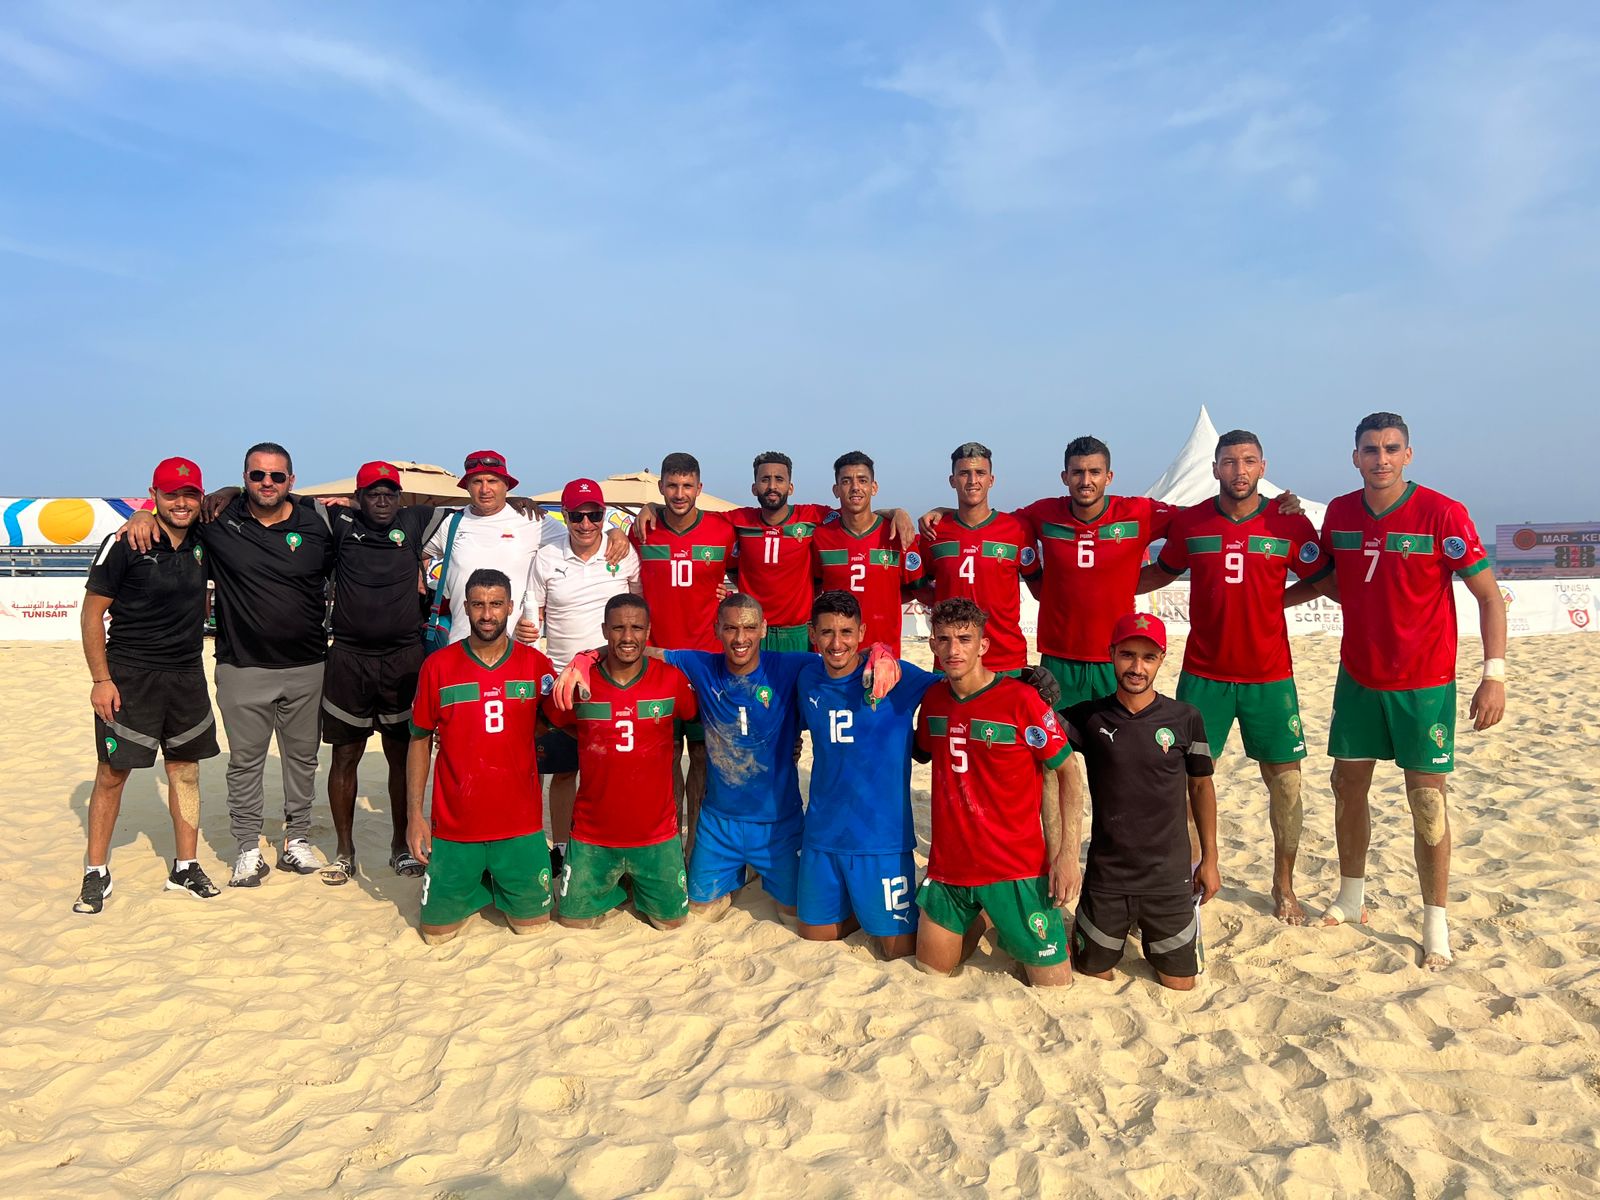 Jeux africains de plage (beach-soccer): Le Maroc remporte l’or